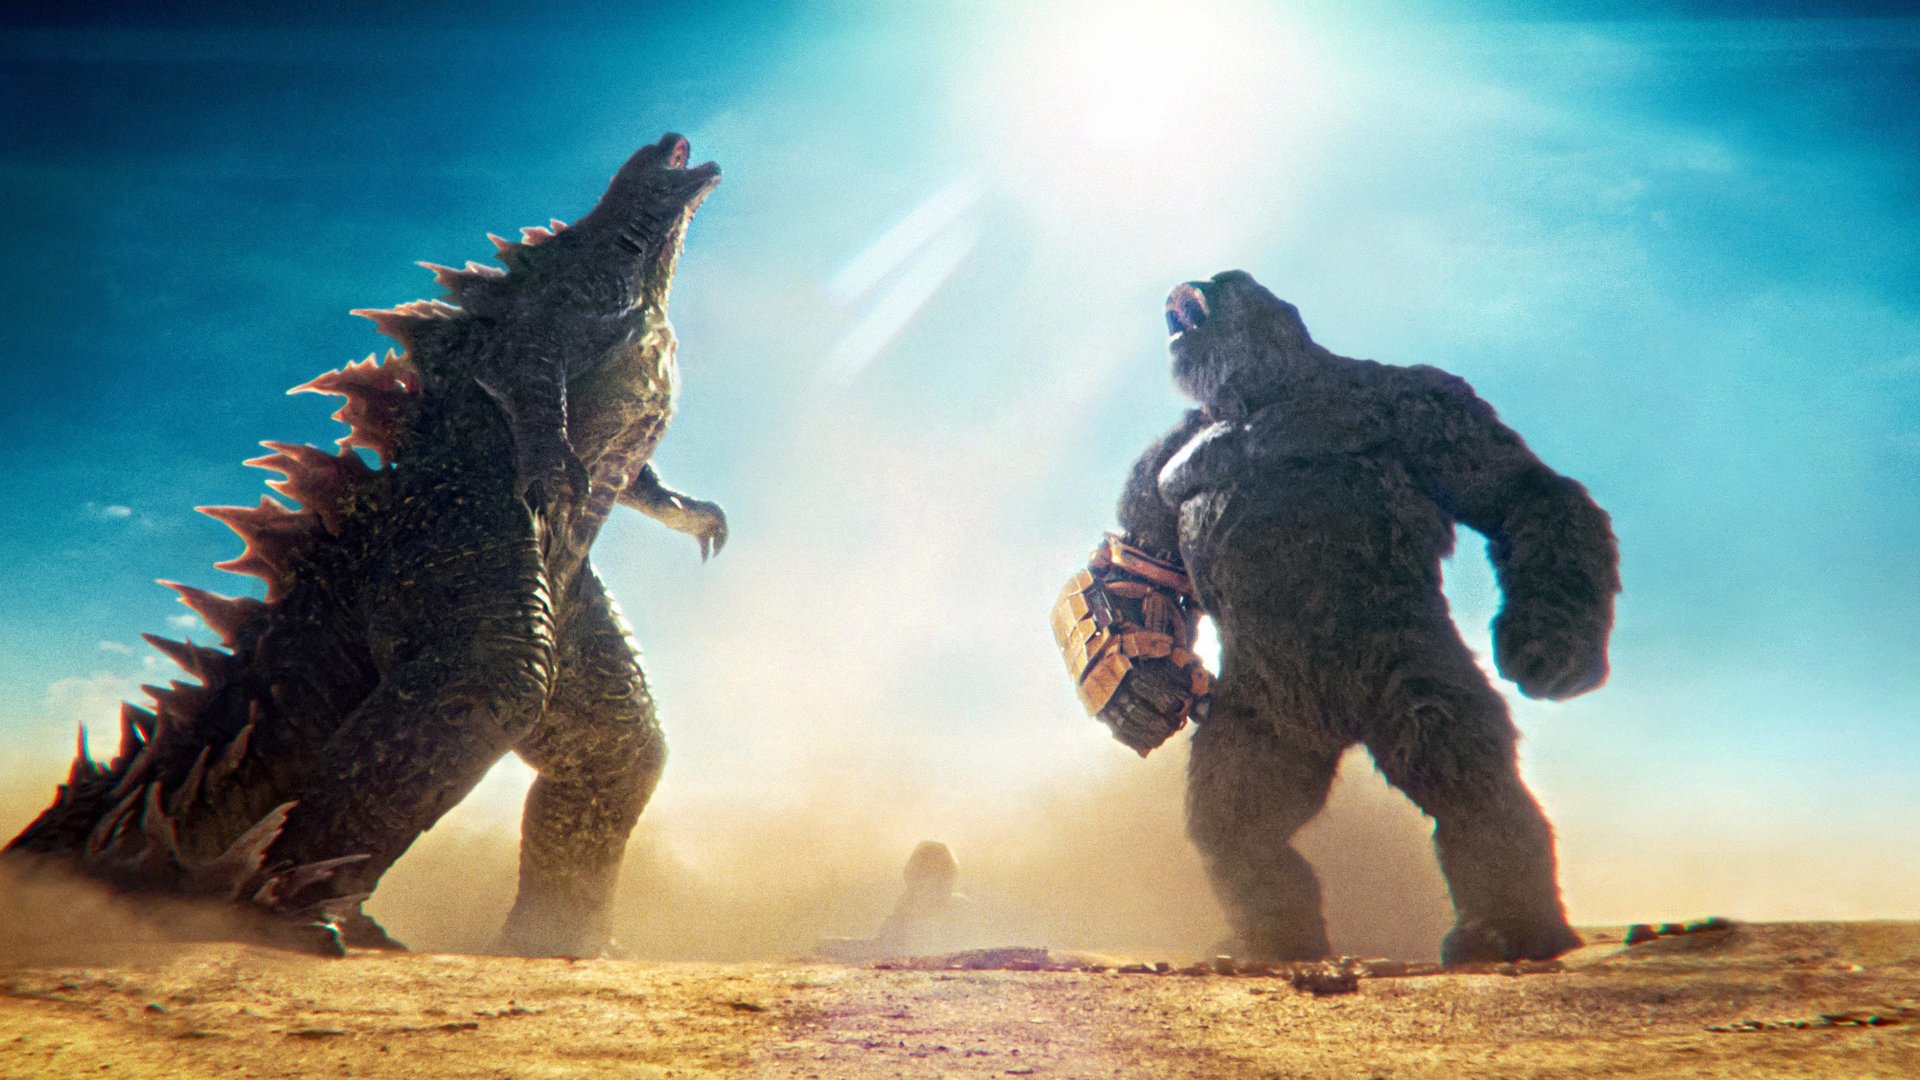 #„Godzilla x Kong“-Fortsetzung soll diesen 29 Jahre alten „Godzilla“-Film kopieren